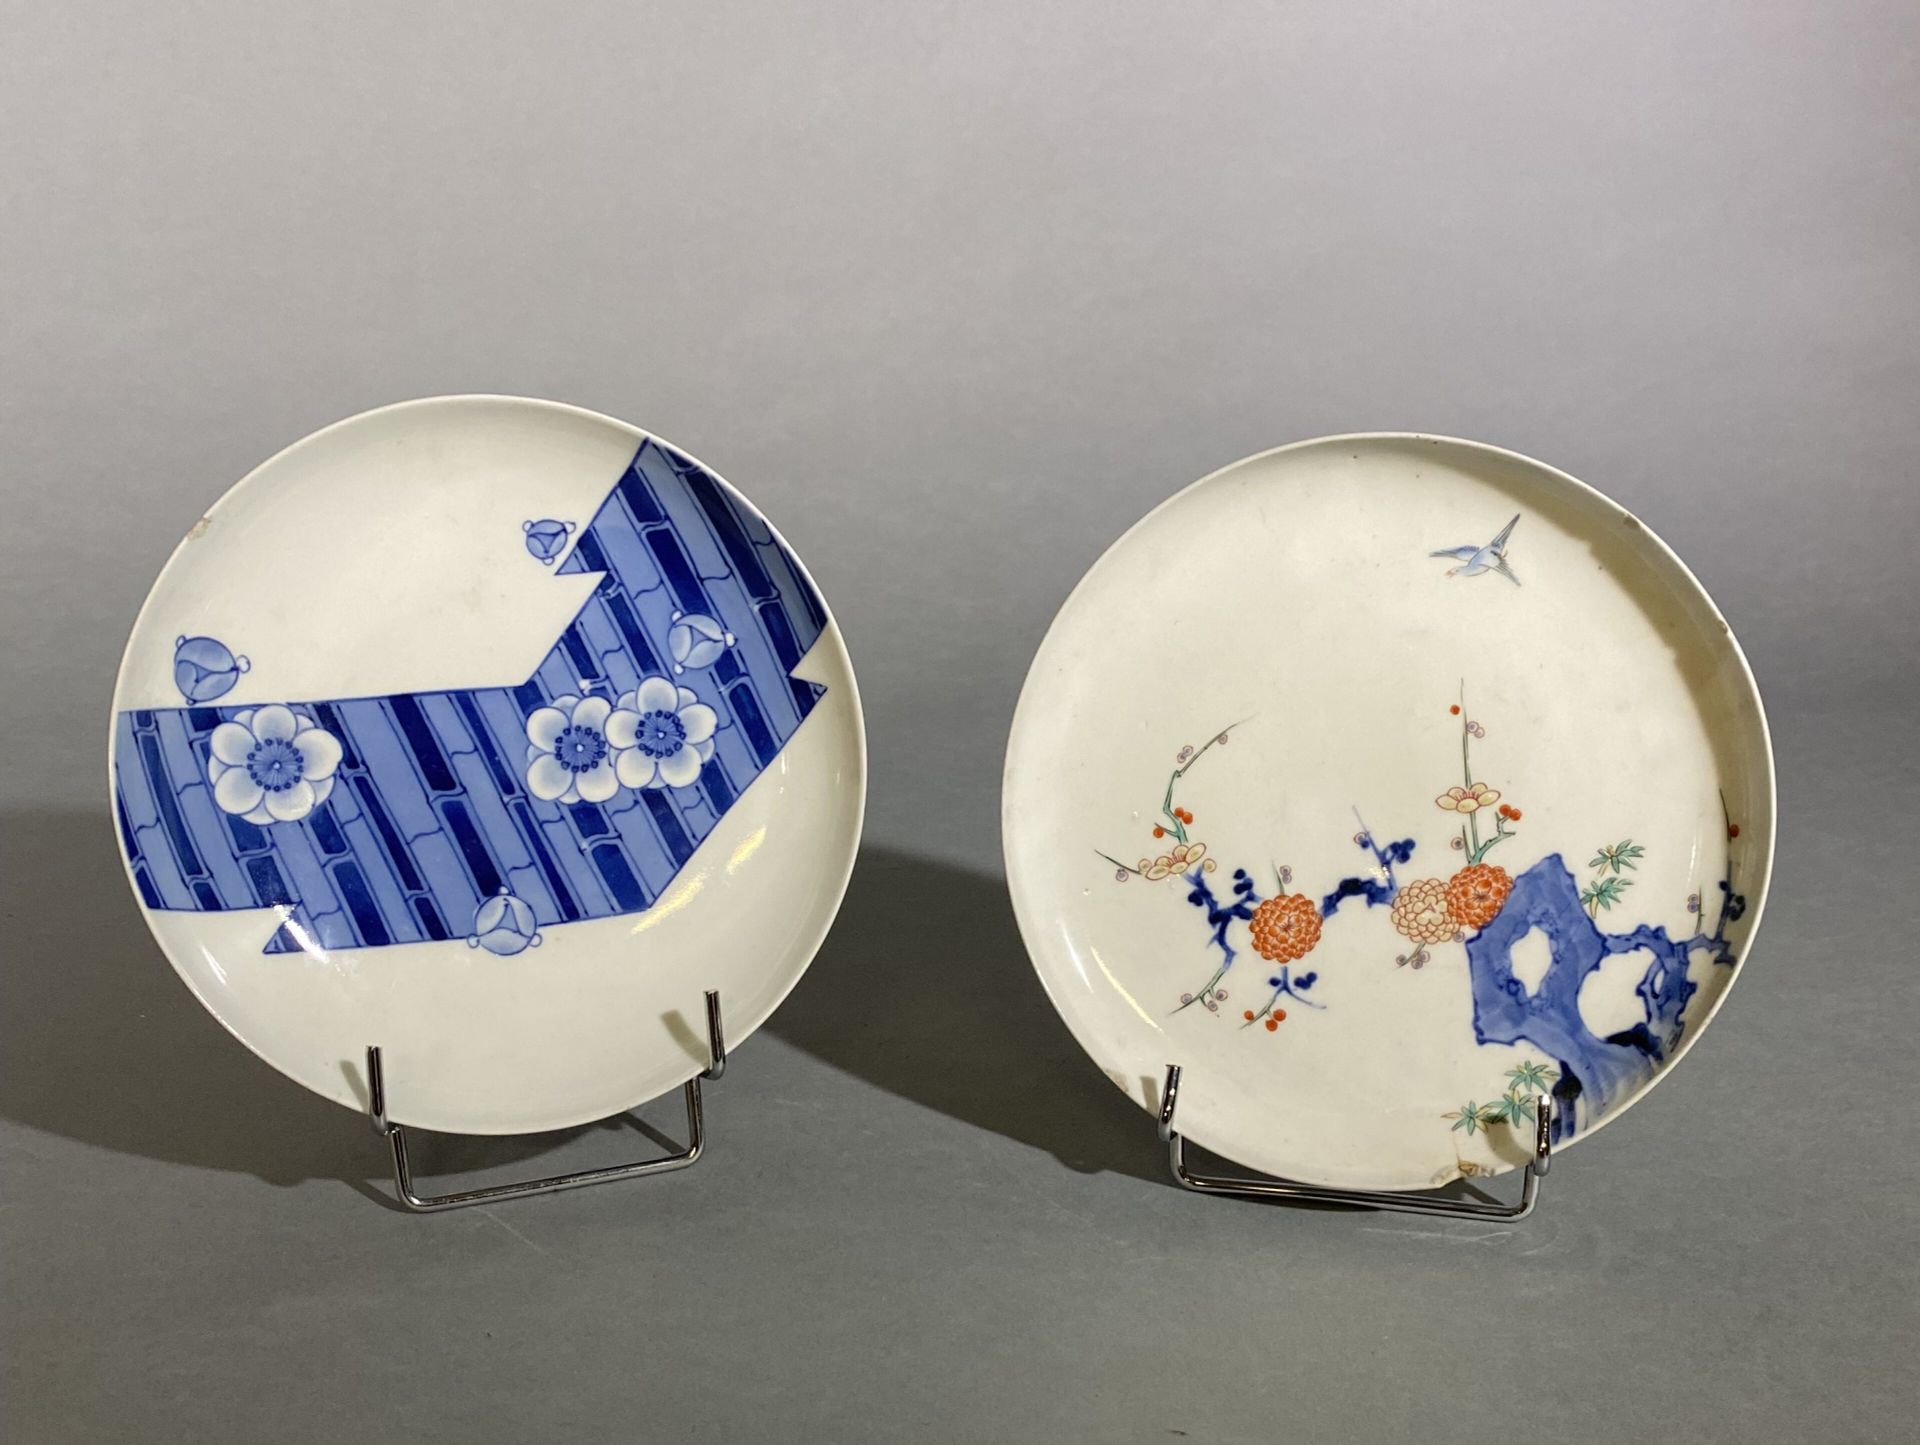 Null 两个小瓷盘，日本，明治时期（1868-1912 年）
一个瓷盘上有柿右卫门珐琅彩装饰，图案为岩石上的梅花和菊花，还有一只飞翔的鸟，底座上有 "福喜长顺&hellip;